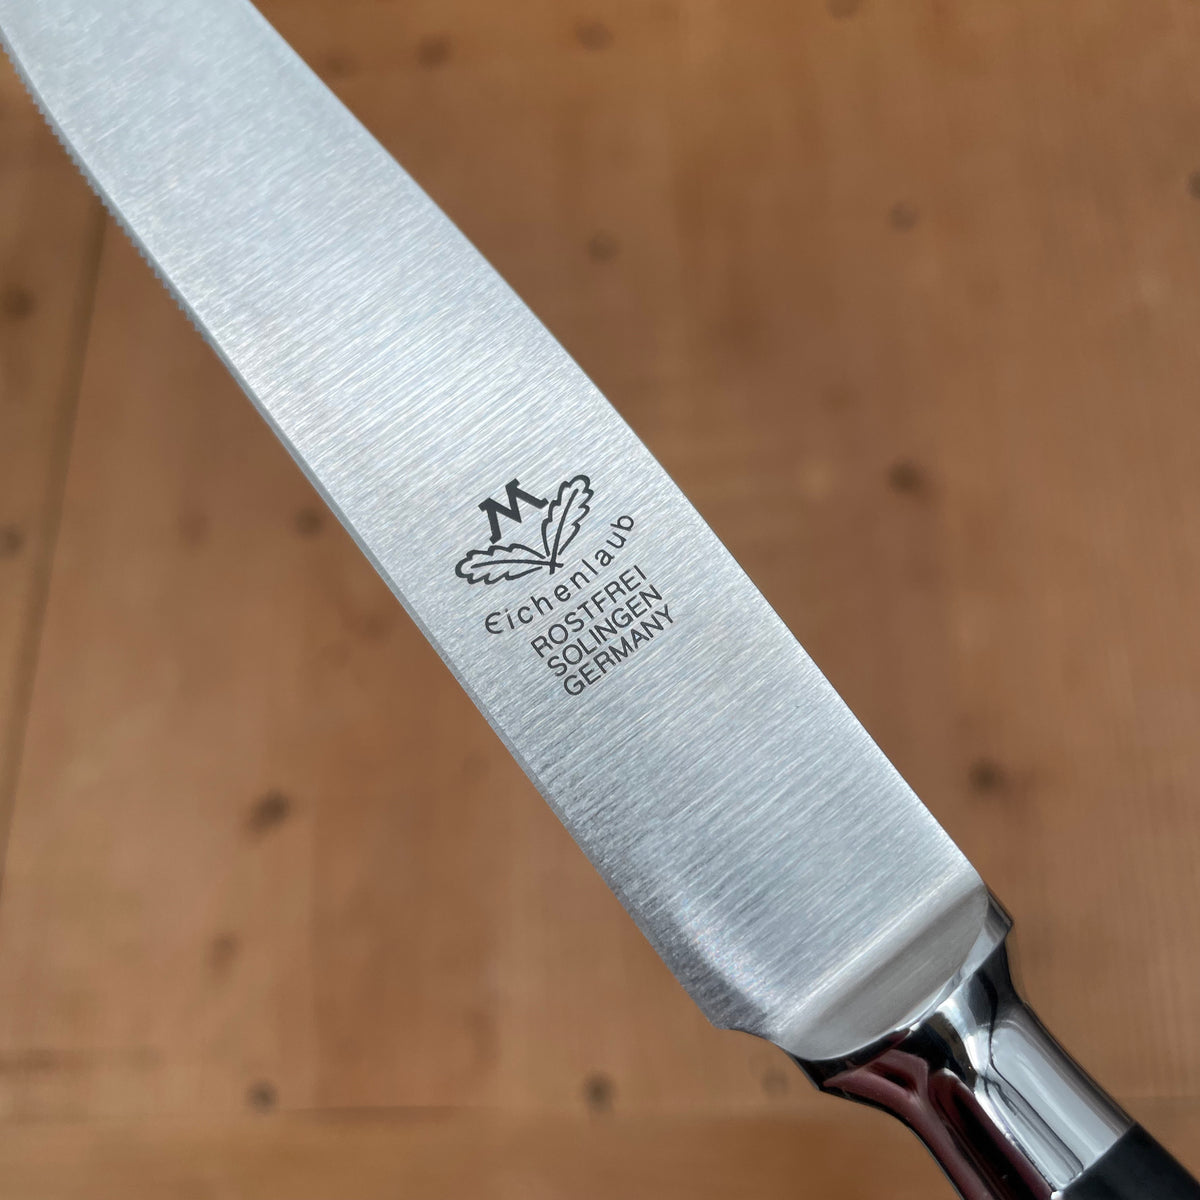 Set Of 6 German Stainless Steel Steak Knife Dinner Tablewares Steak Knives  With Solid Wood Handle Cutlery Knife